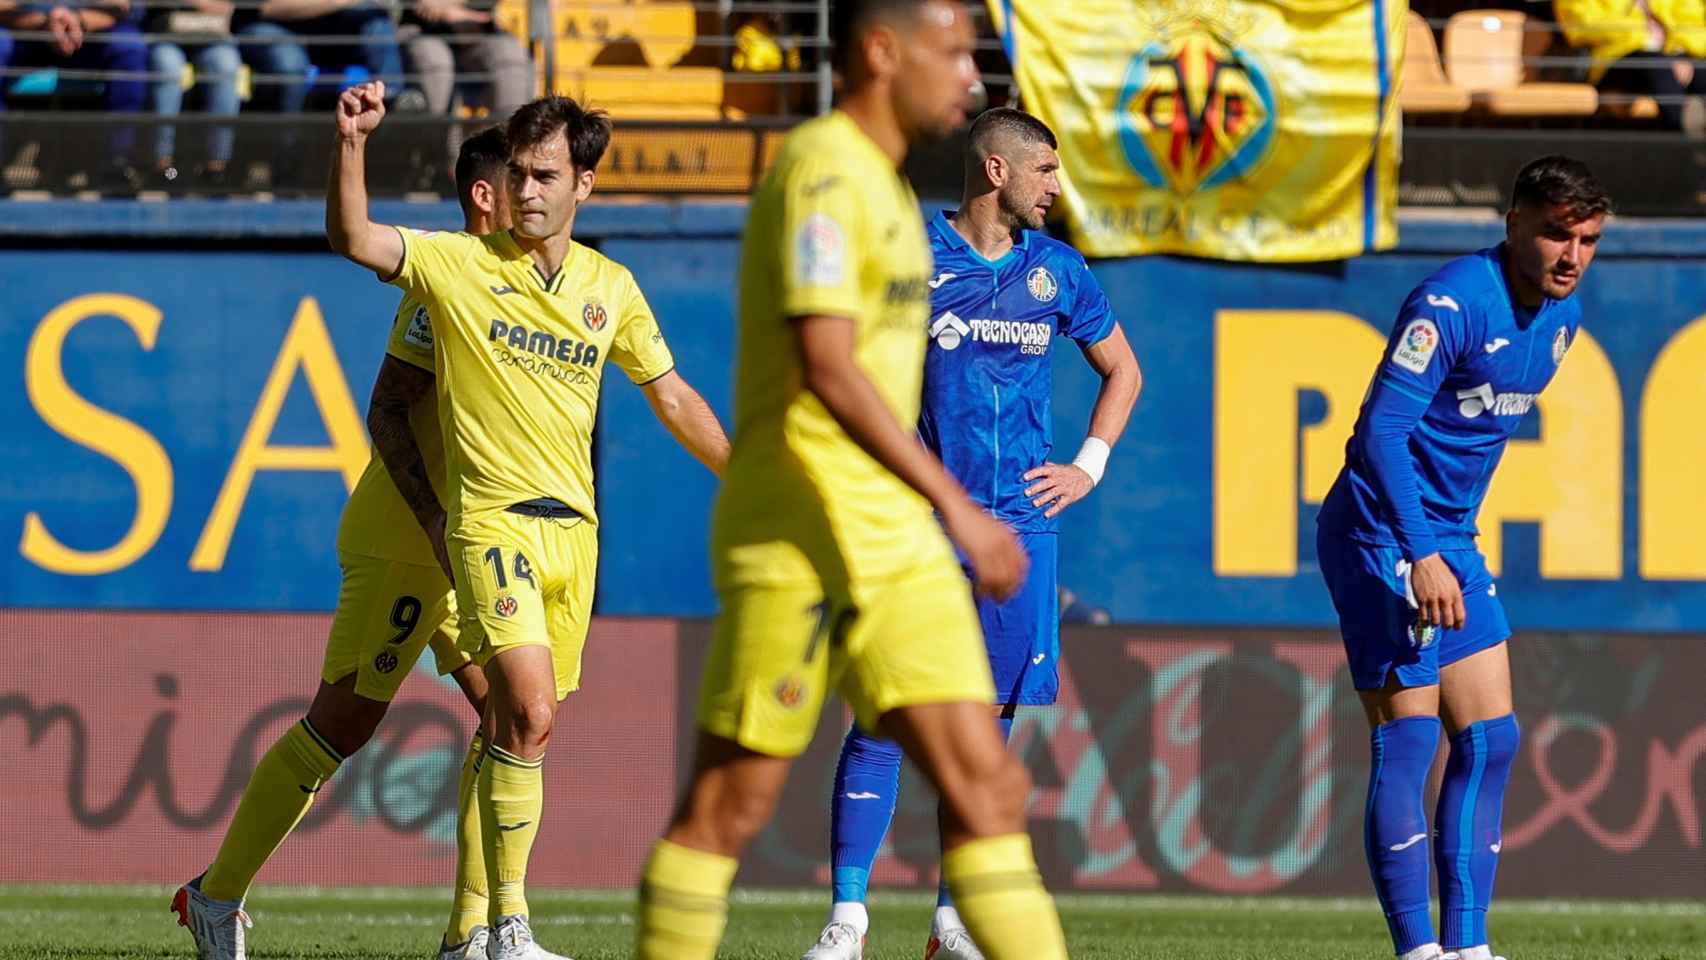 Manu Trigueros celebrando su gol en el Villarreal - Getafe